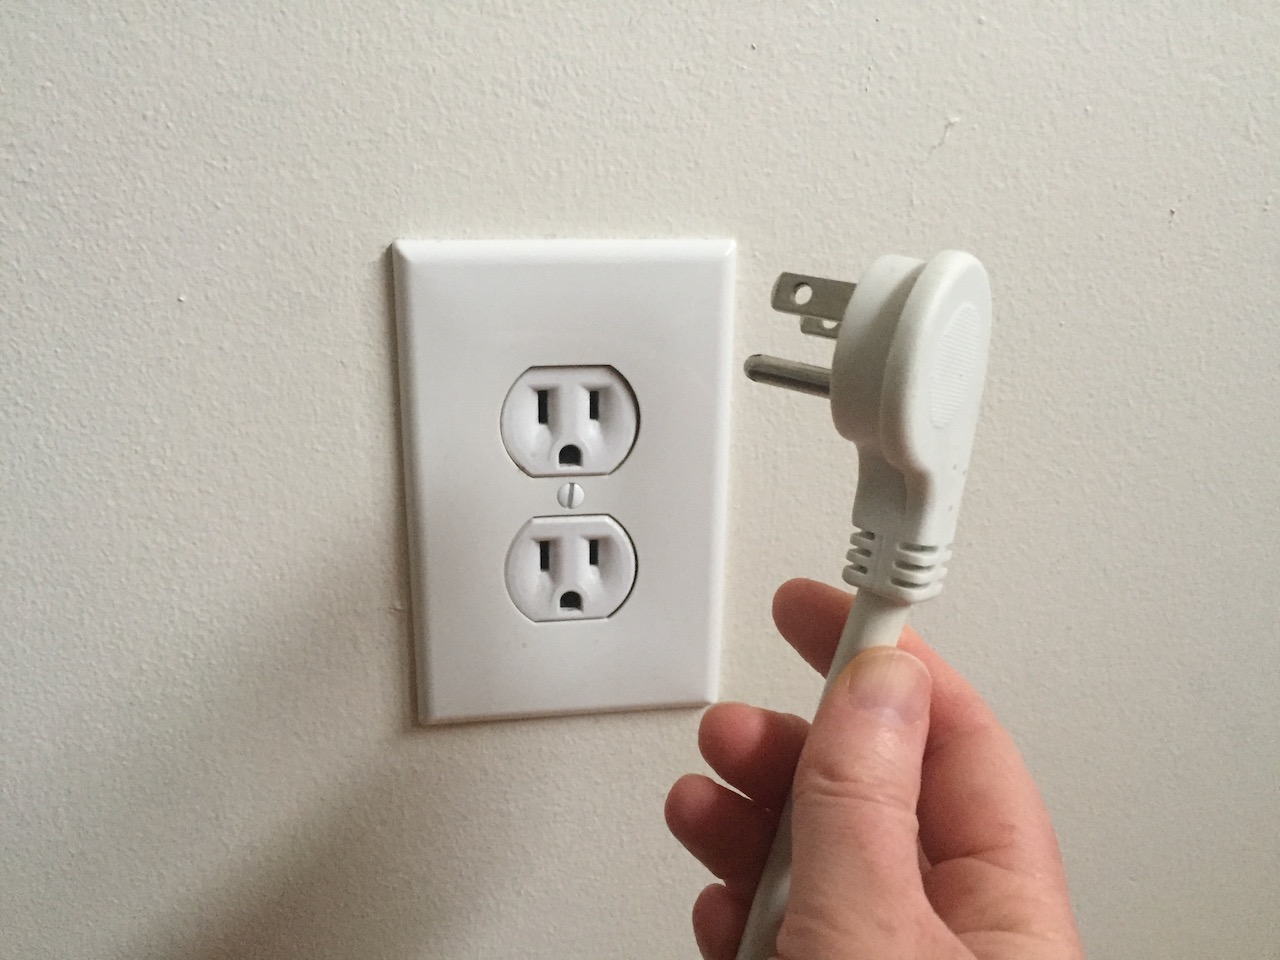 Unplug outlet